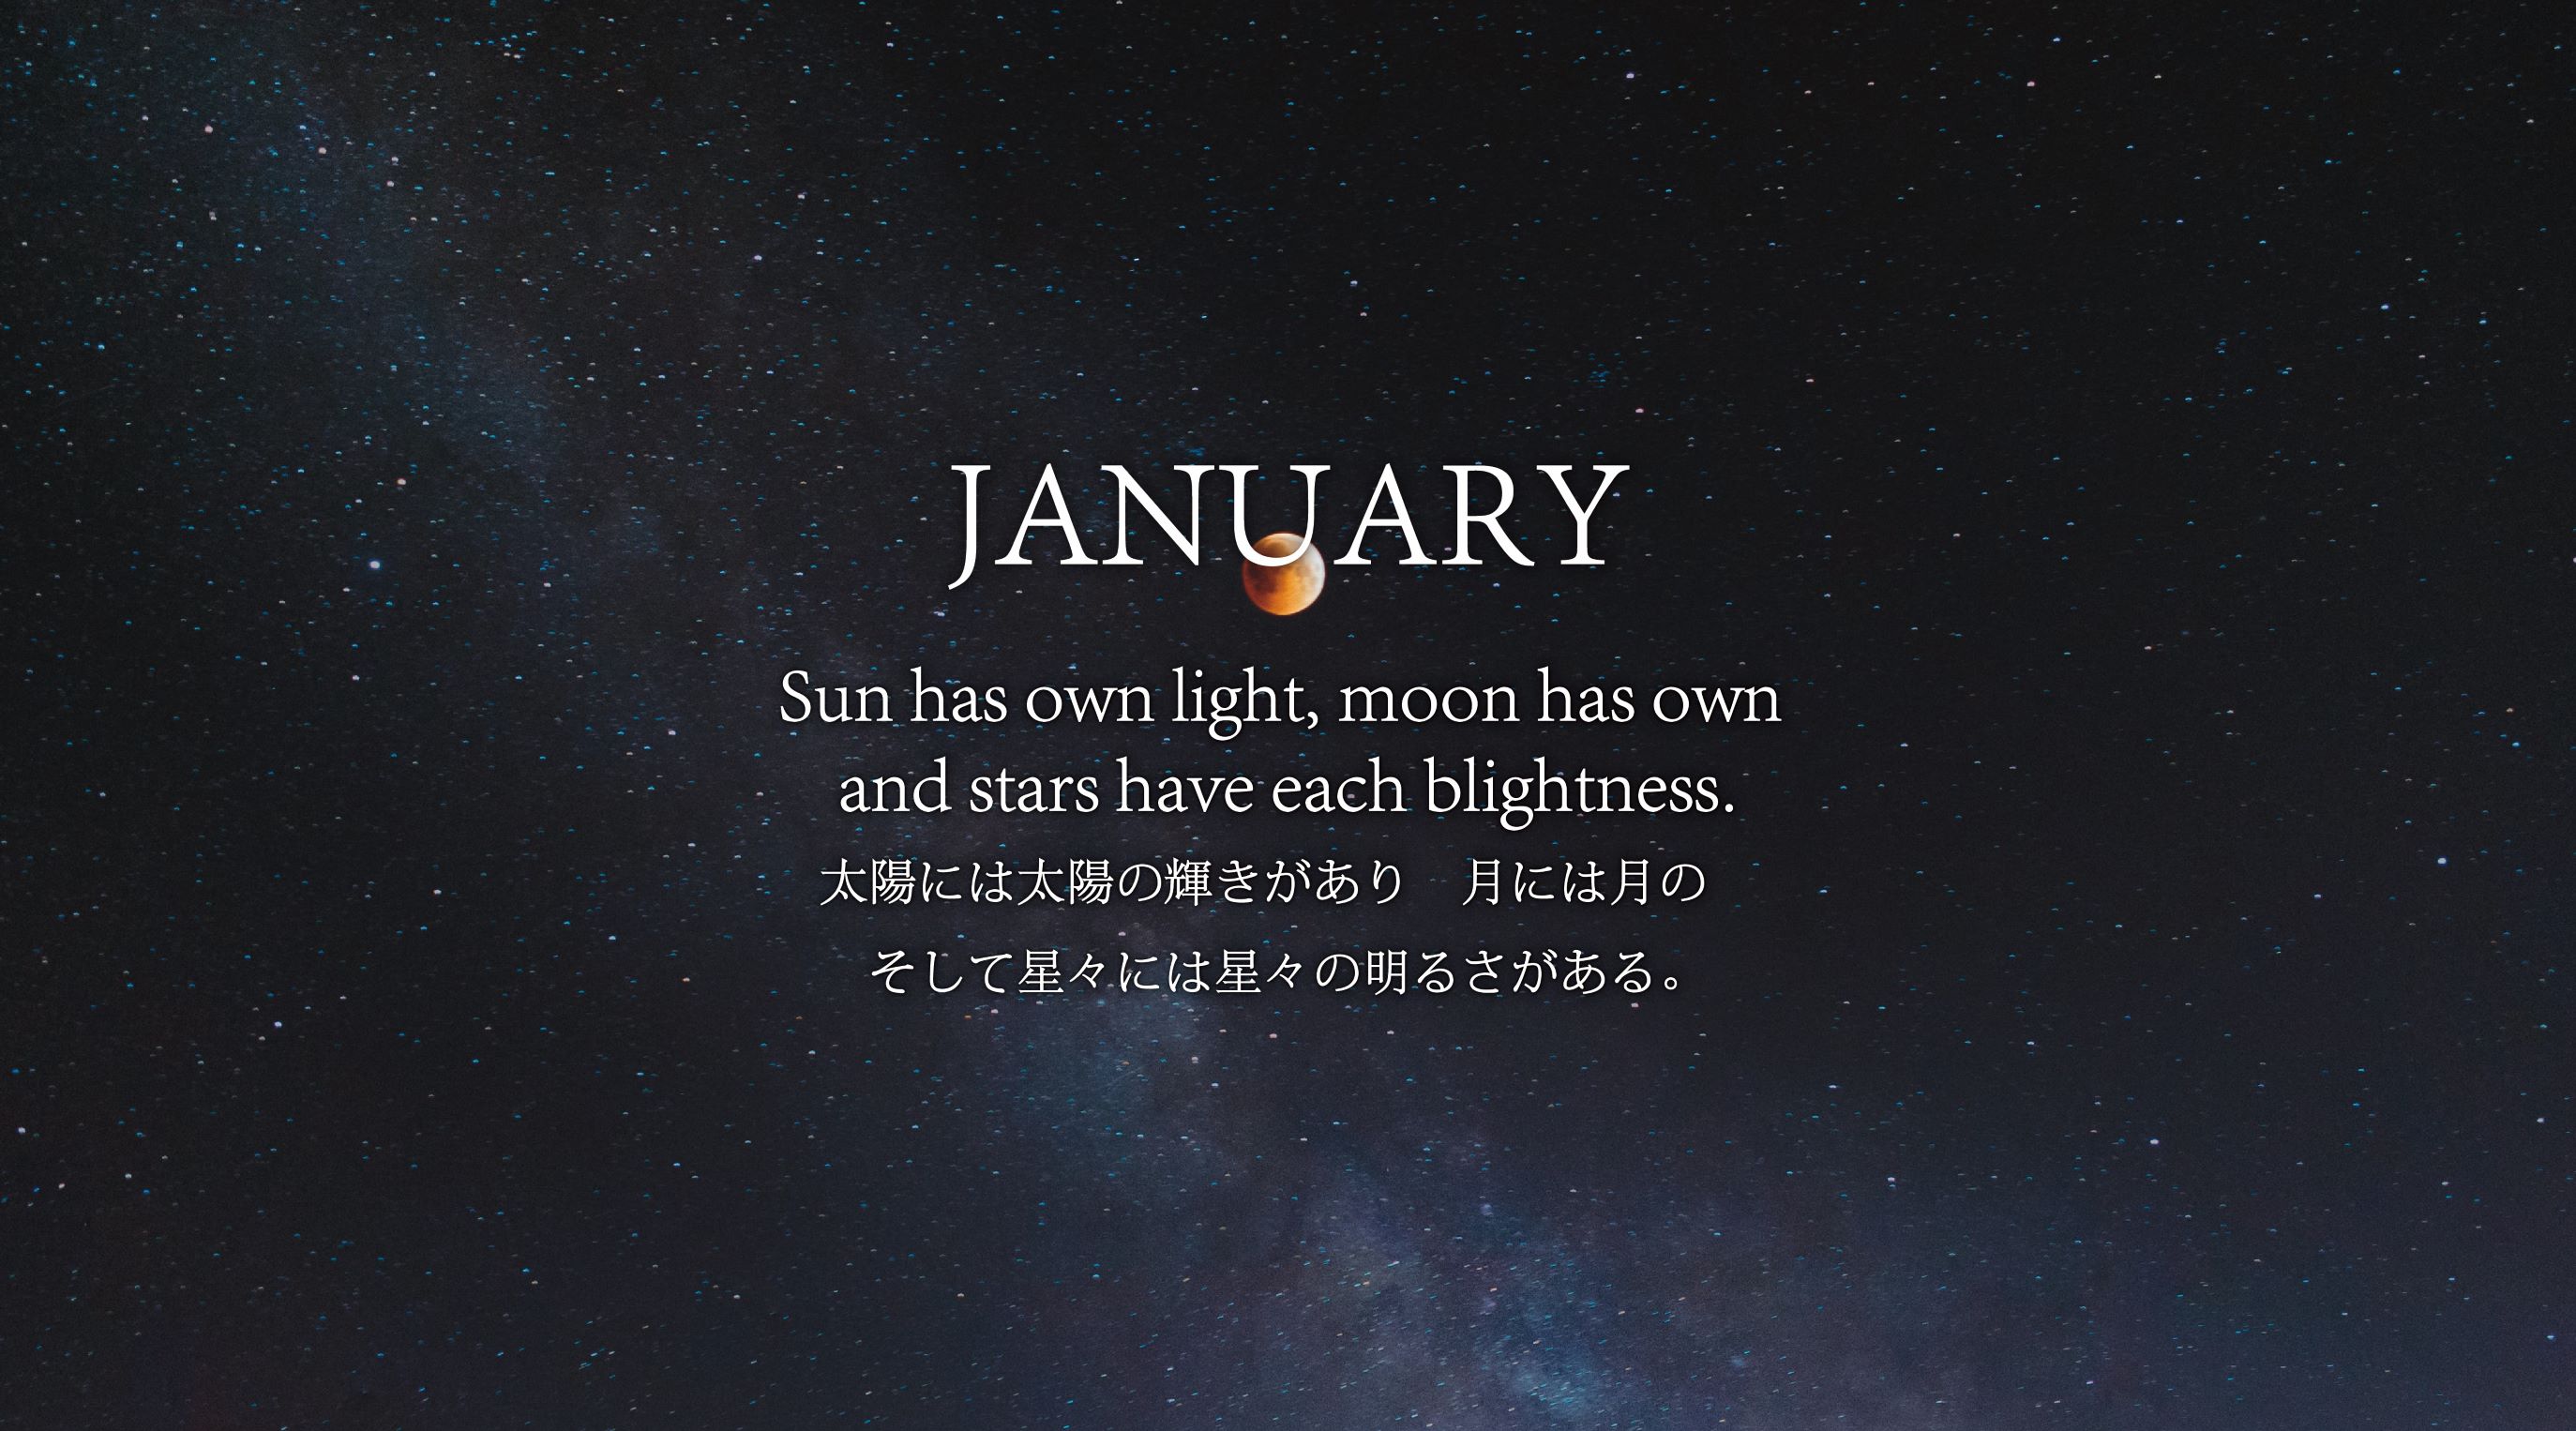 日本語 太陽には太陽の輝きがあり 月には月のそして星々には星々の明るさがある Alg